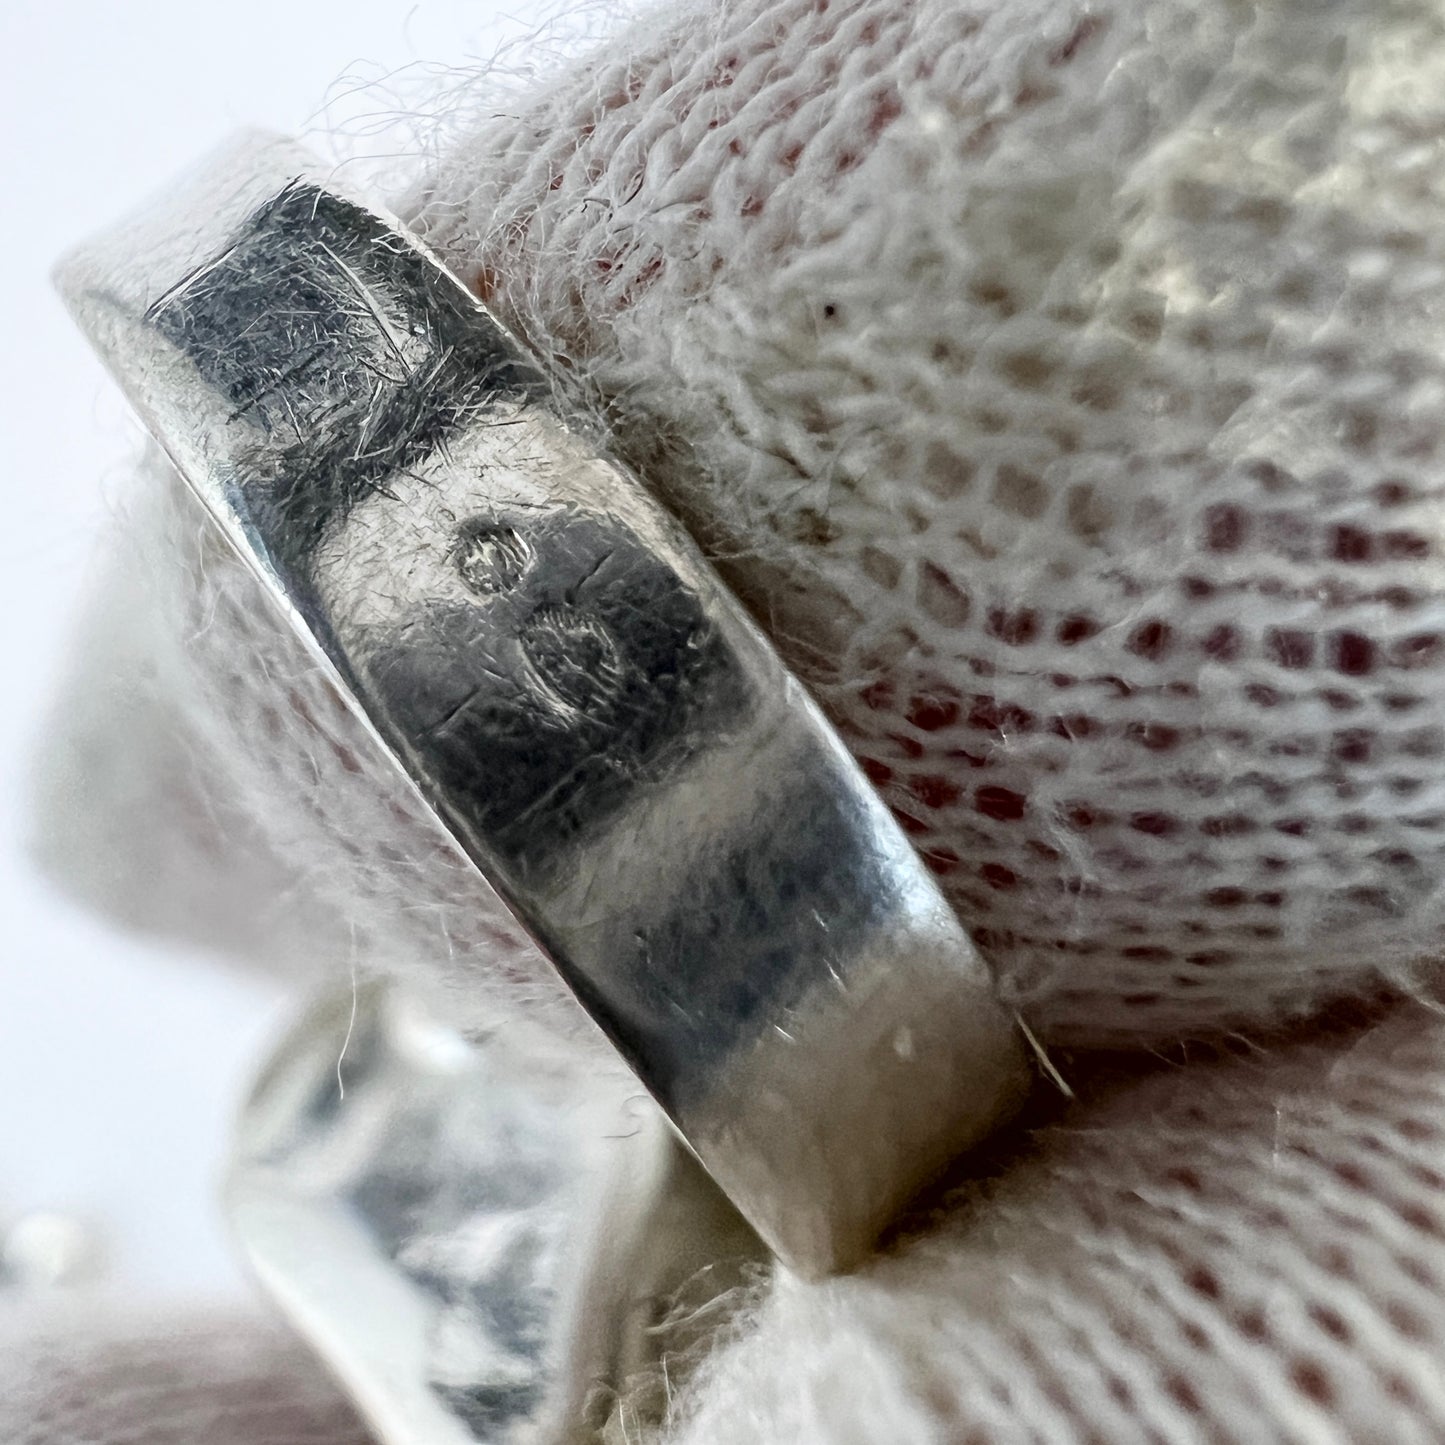 Avi Soffer, Israel Vintage Modernist Sterling Silver Amethyst Ring